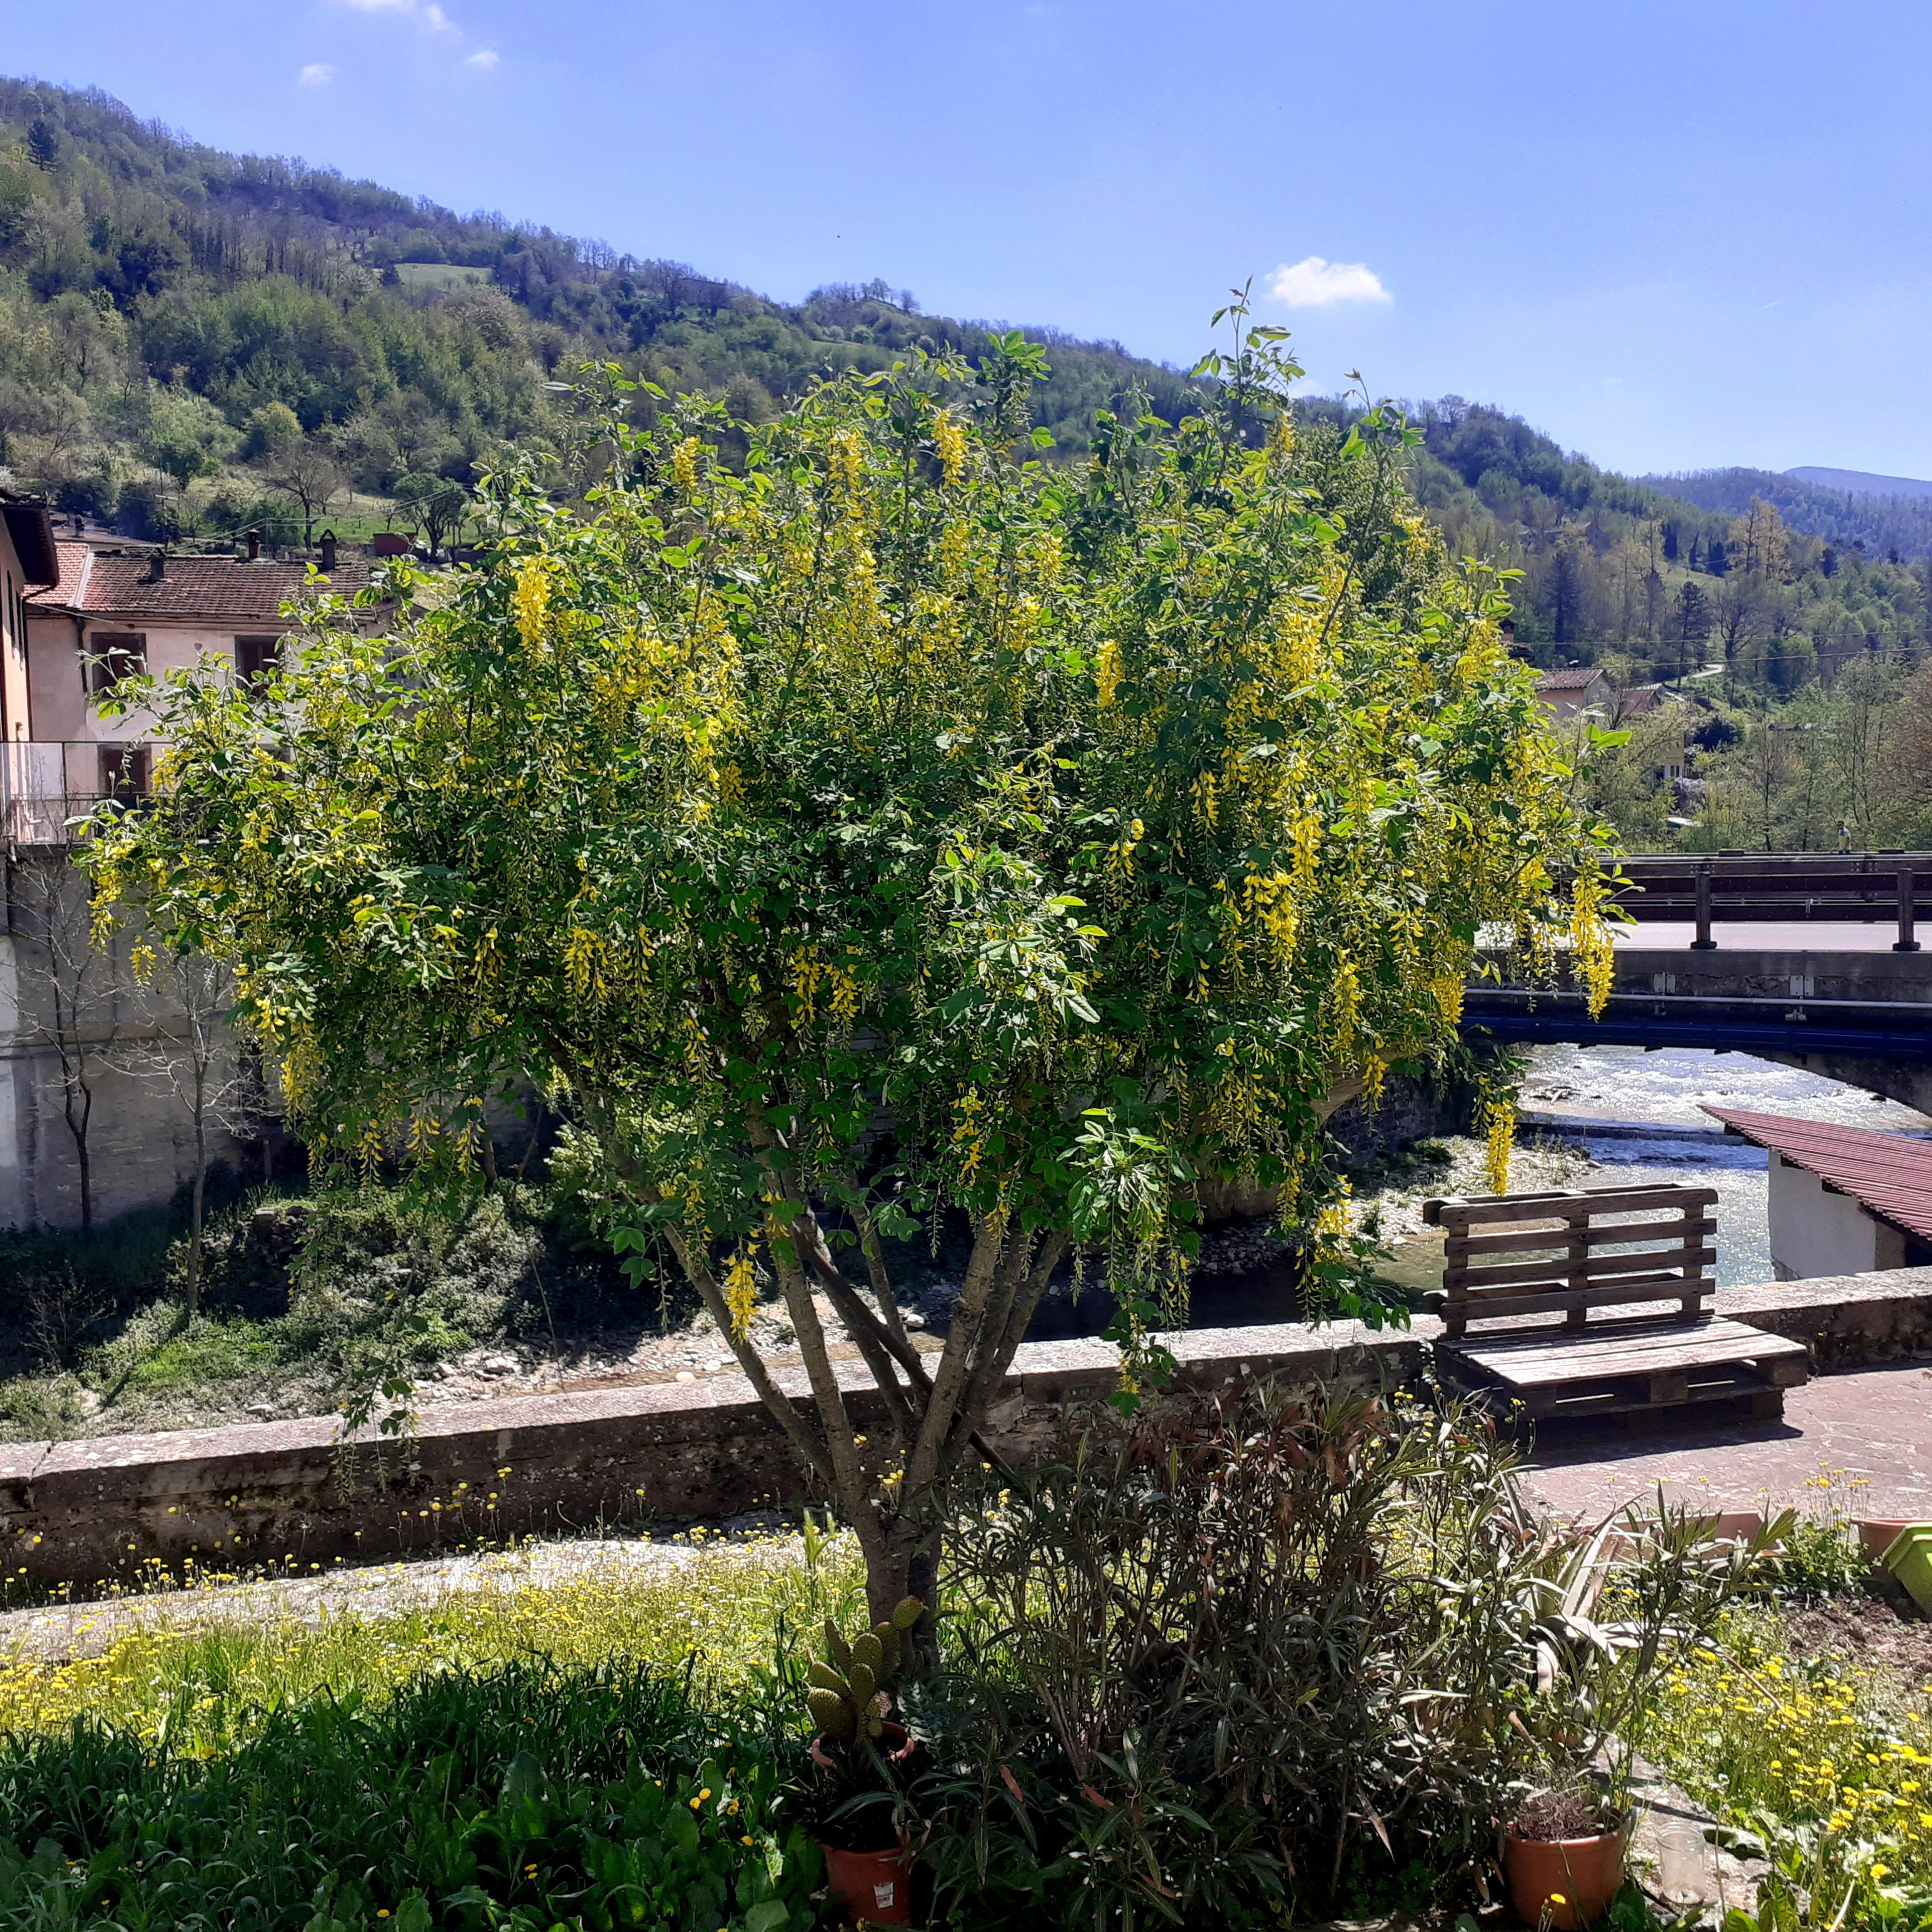 Dom z Kamienia blog o życiu w Toskanii